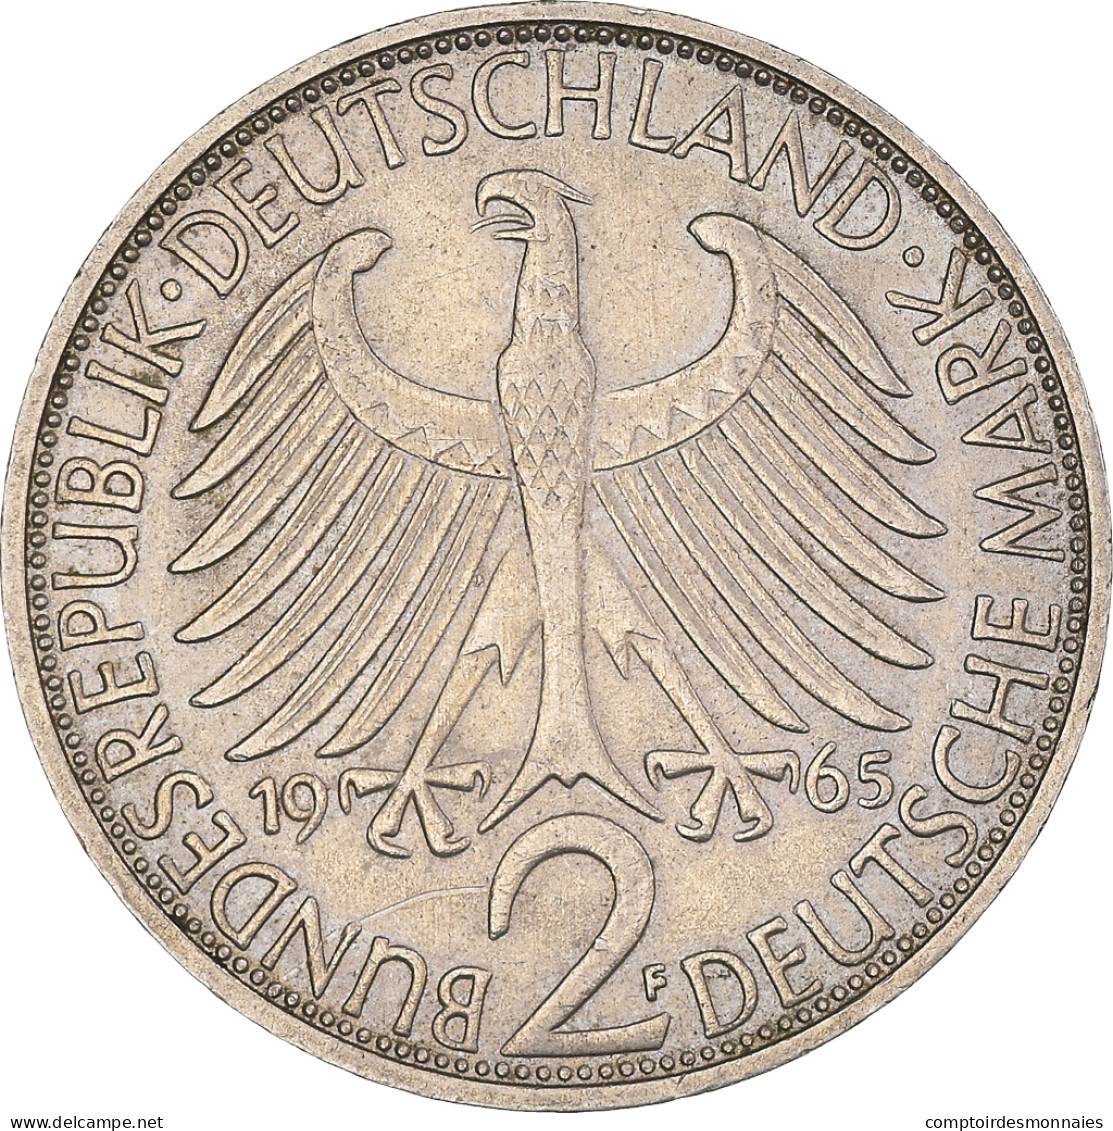 Monnaie, République Fédérale Allemande, 2 Mark, 1965, Stuttgart, TTB - 2 Marchi